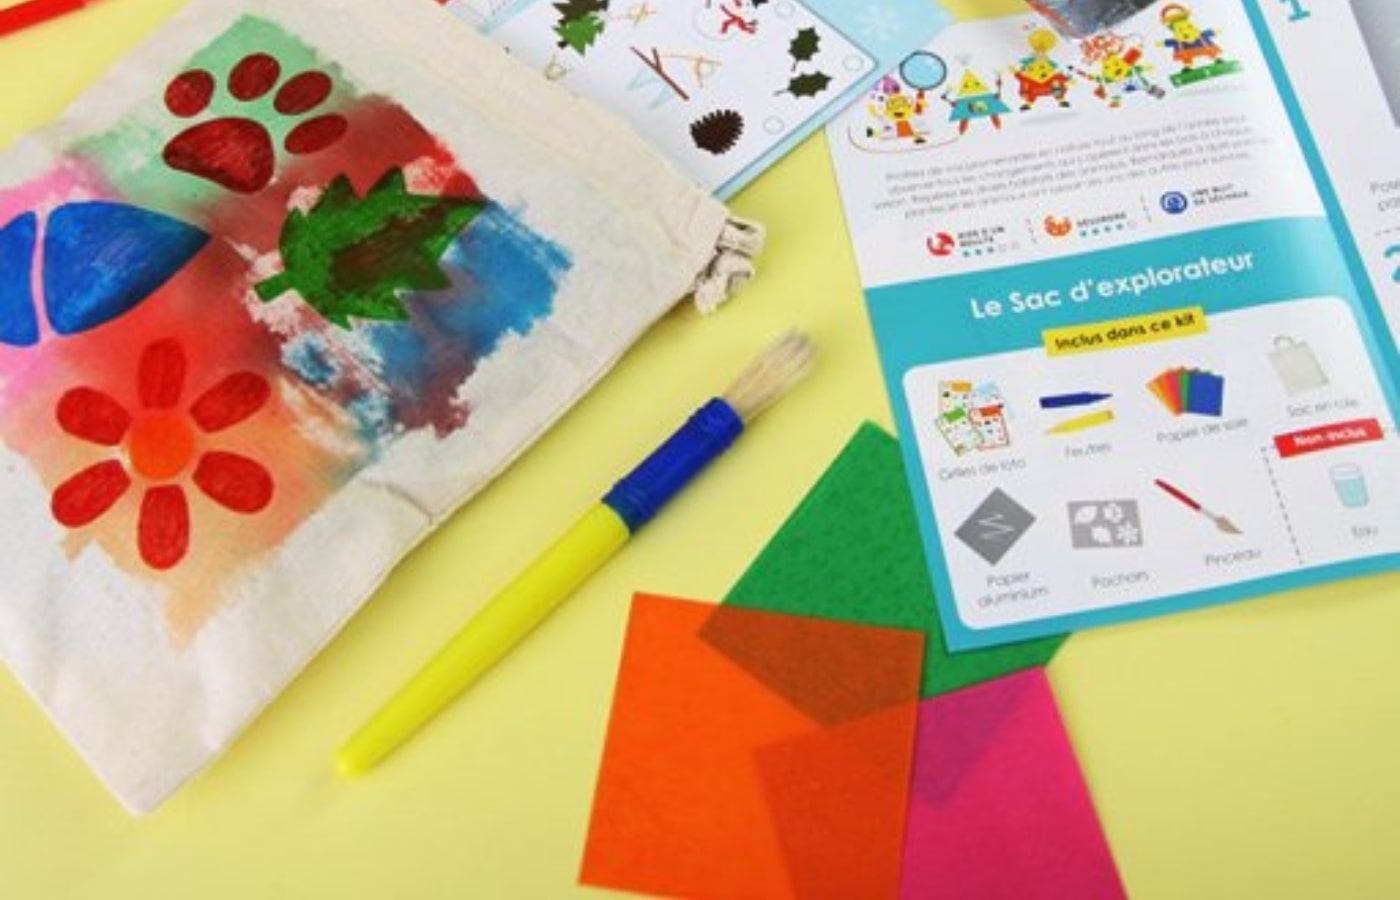 20 box créatives pour occuper intelligemment ses enfants - Marie Claire